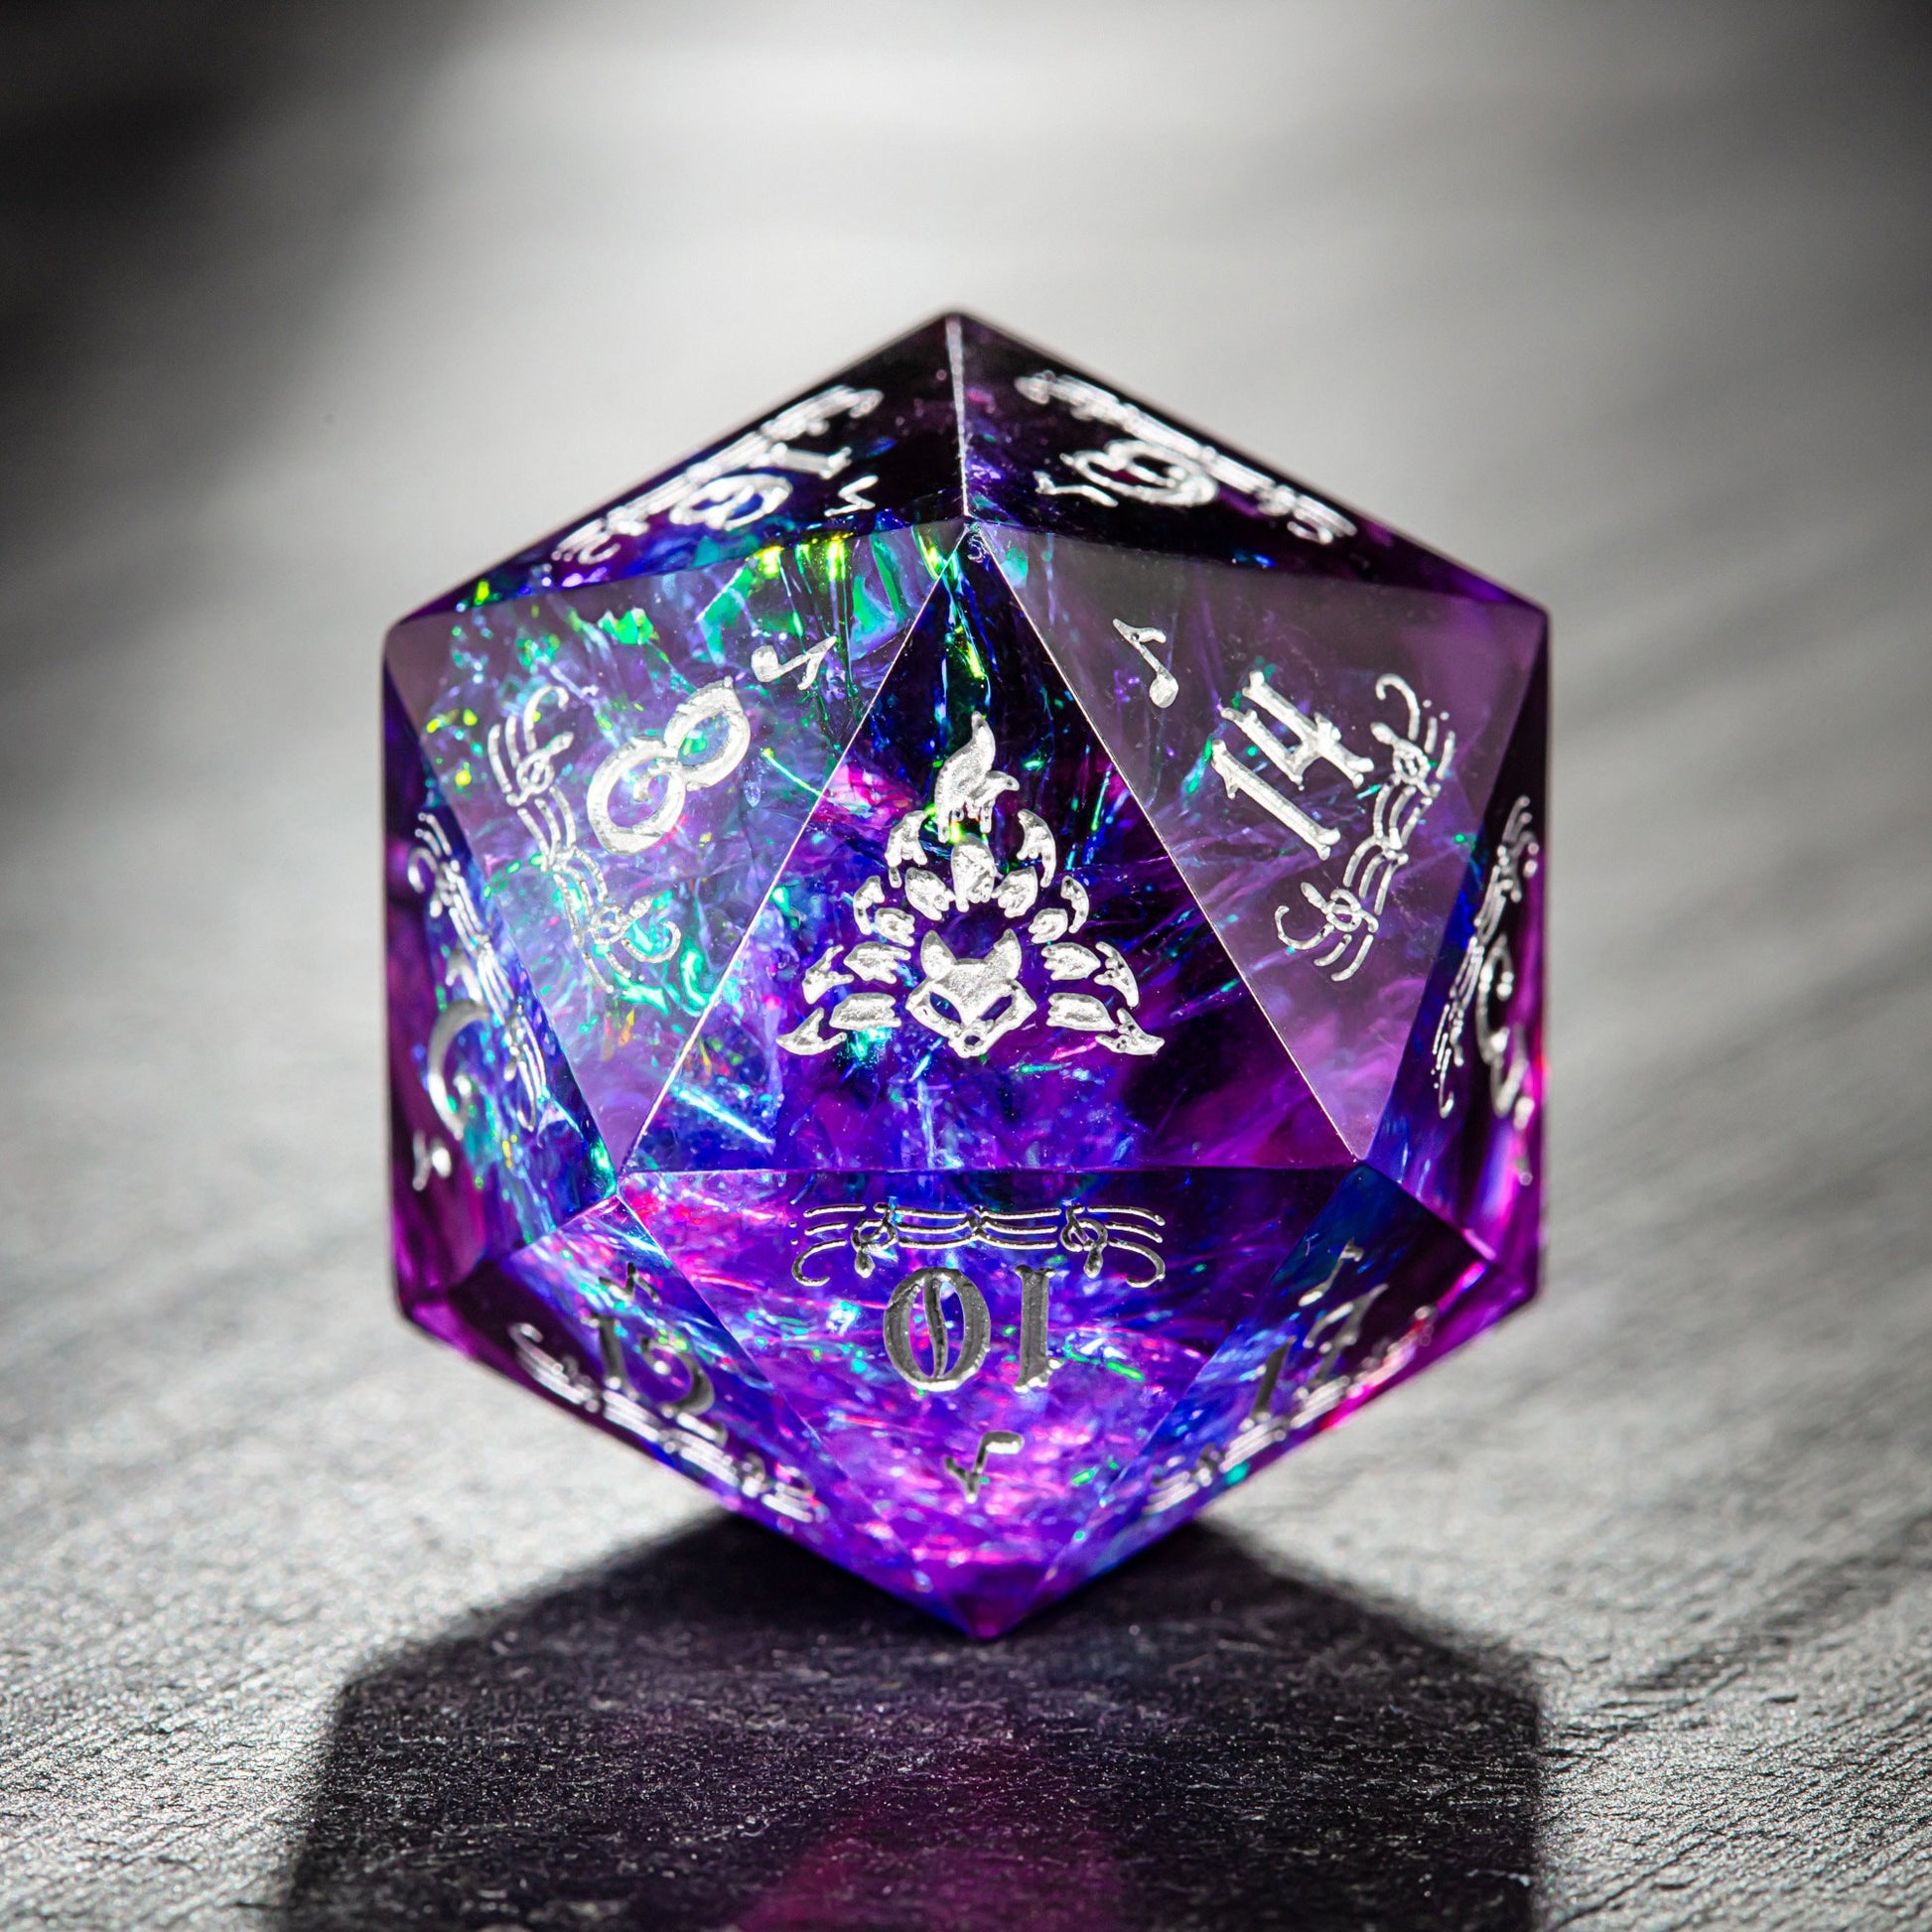 Purple Glitter Galaxy Dice Bard Motif Nine Tails Fox DnD D&D Dice Set - CrystalMaggie